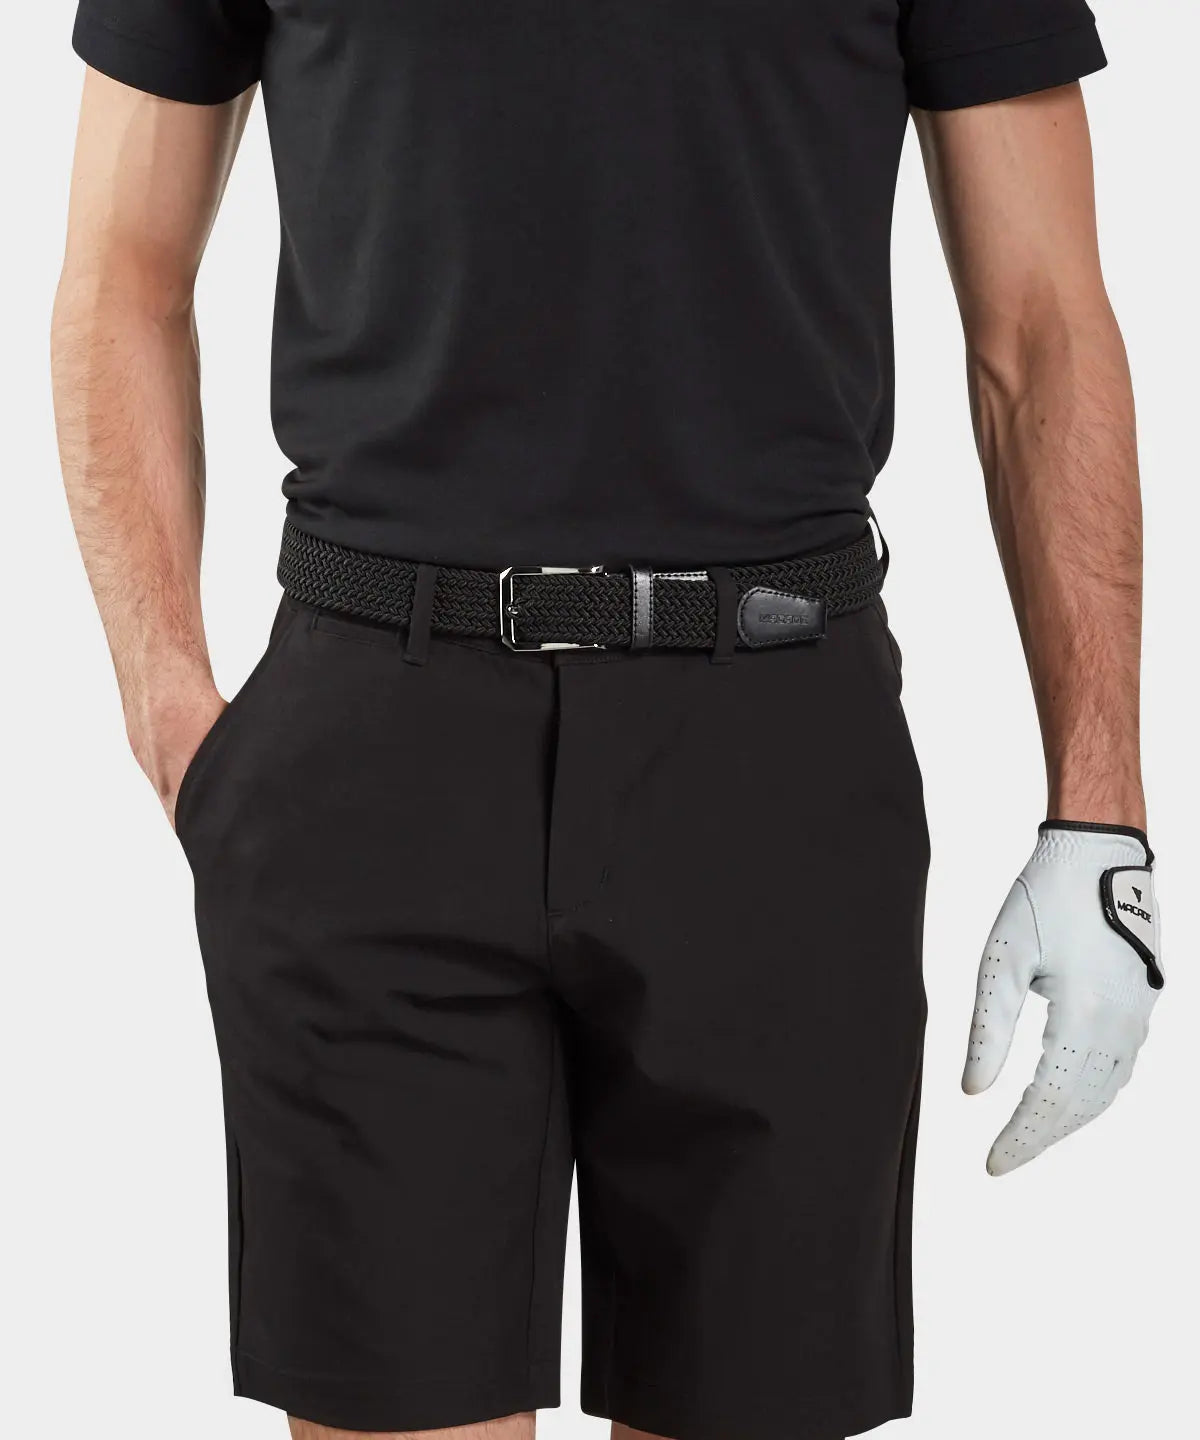 https://macadegolf.com/cdn/shop/products/Men-s-Elastic-Black-Belt-Macade-Golf-1655975322.jpg?v=1671226286&width=1445